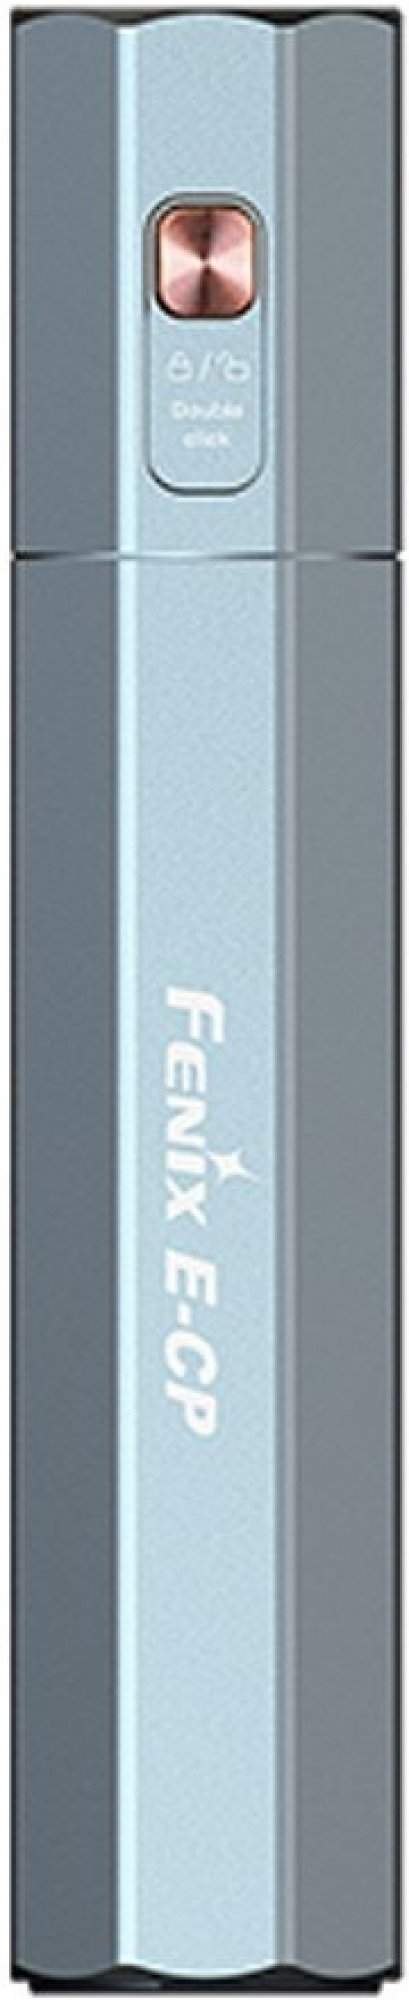 Fenix powerbanka se svítilnou E-CP